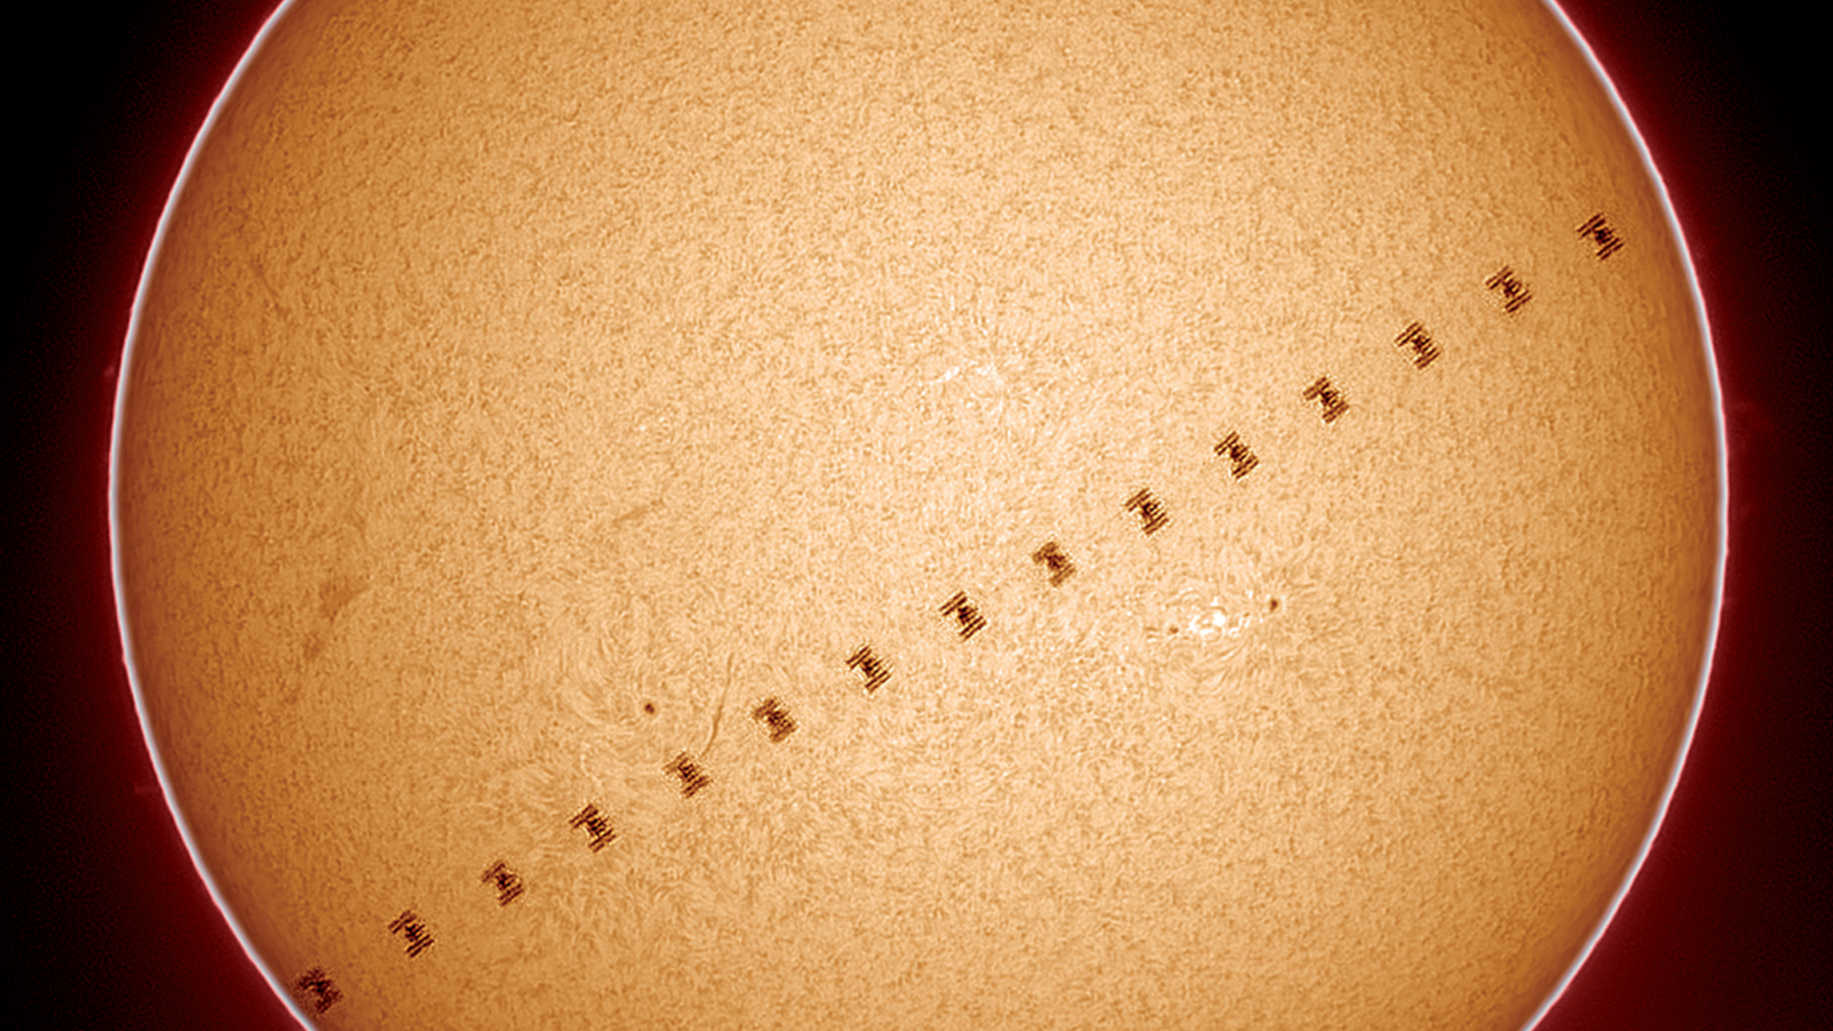 Le transit de la Station Spatiale Internationale, ISS, documenté ici en lumière Hα, a eu lieu le 17/06/2017 à 18:57:03 heures, au moment où le soleil était à 64,7 degrés au-dessus de l’horizon, dans le ciel austral. La distance de l’ISS par rapport au site d’observation était de 451,6 kilomètres, ce qui fait que le transit ne dura que 0,6 seconde et que la station spatiale apparaissait relativement grande. La photo a été réalisée avec un Coronado Solarmax60 et les autres équipements représentés sur la photo 3. La photo est un montage composé de 16 images. U. Dittler